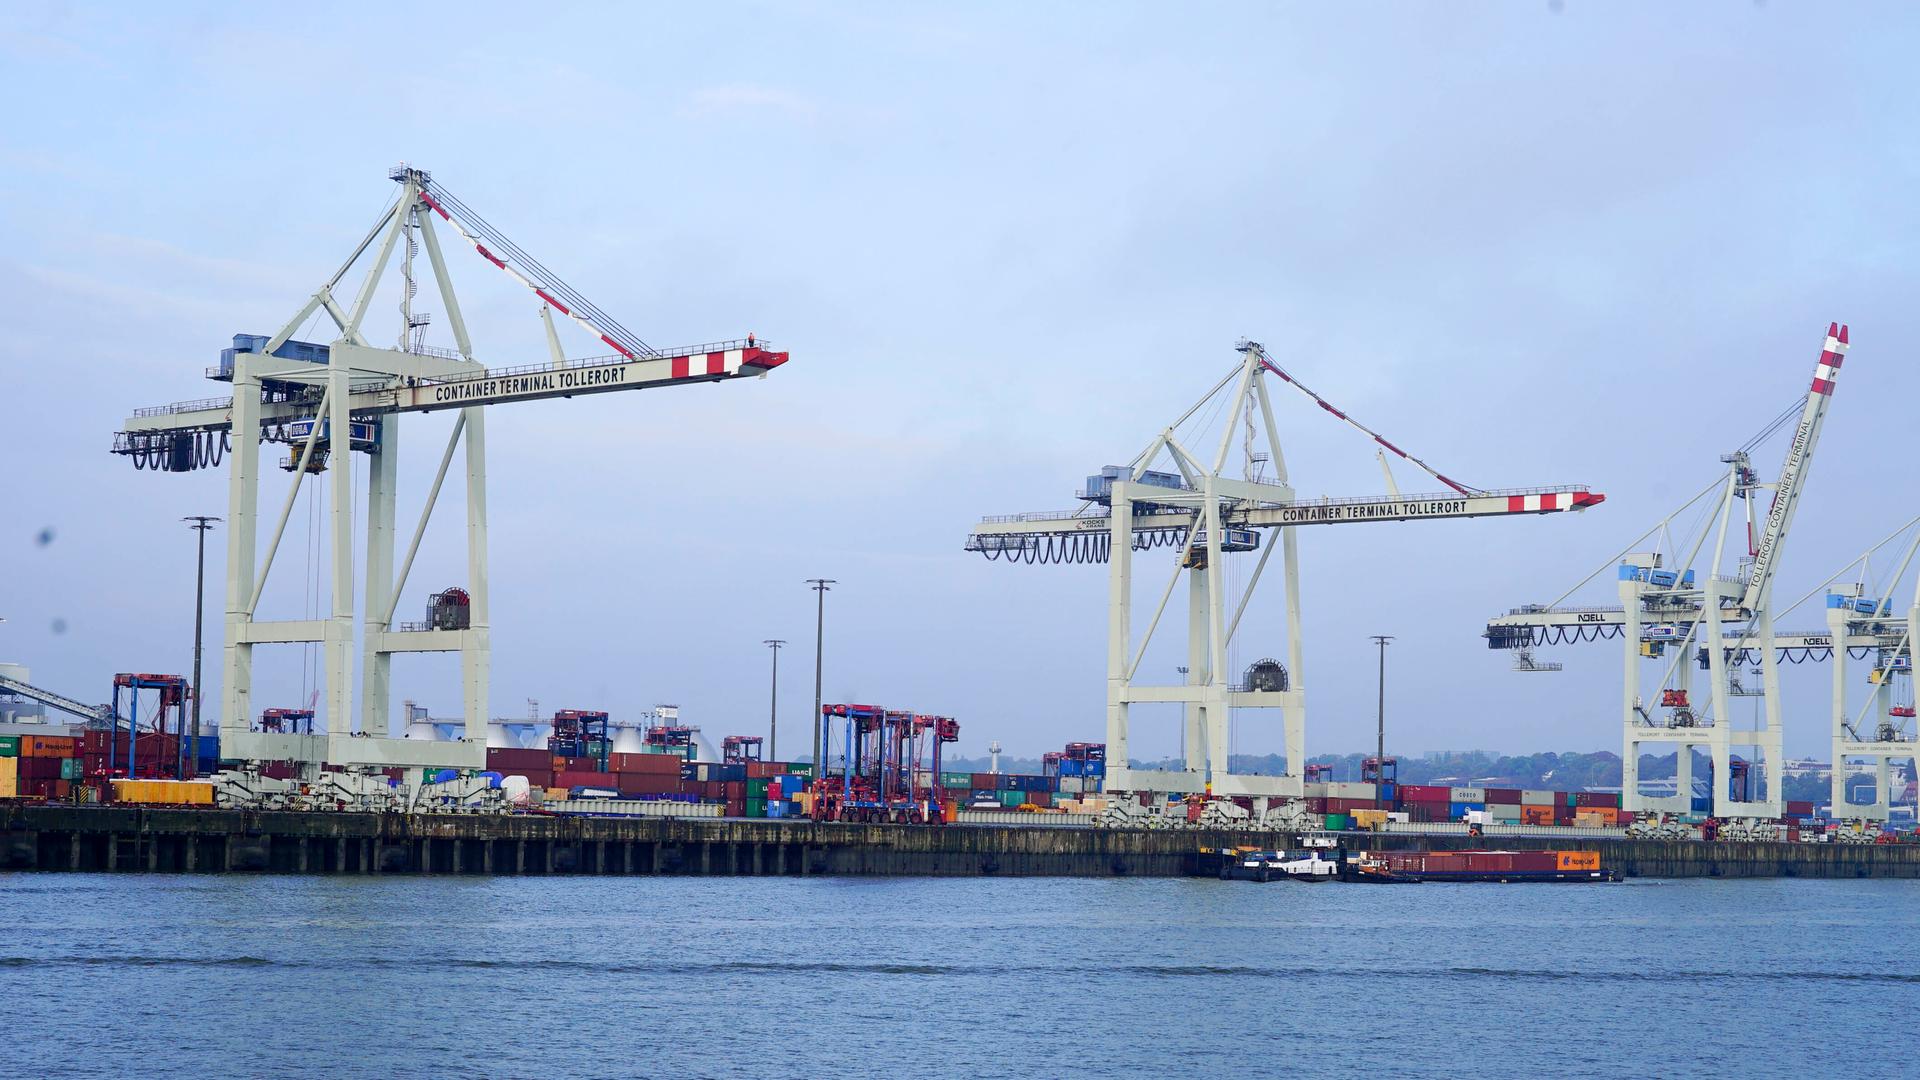 Ein chinesisches Cosco-Schiff liegt am Terminal Tollerort im Hamburger Hafen. Außerdem sind Hafenkräne zu sehen. Die Beteiligung von China am Hamburger Hafen am HALA Tollerort Terminal ist umstritten.